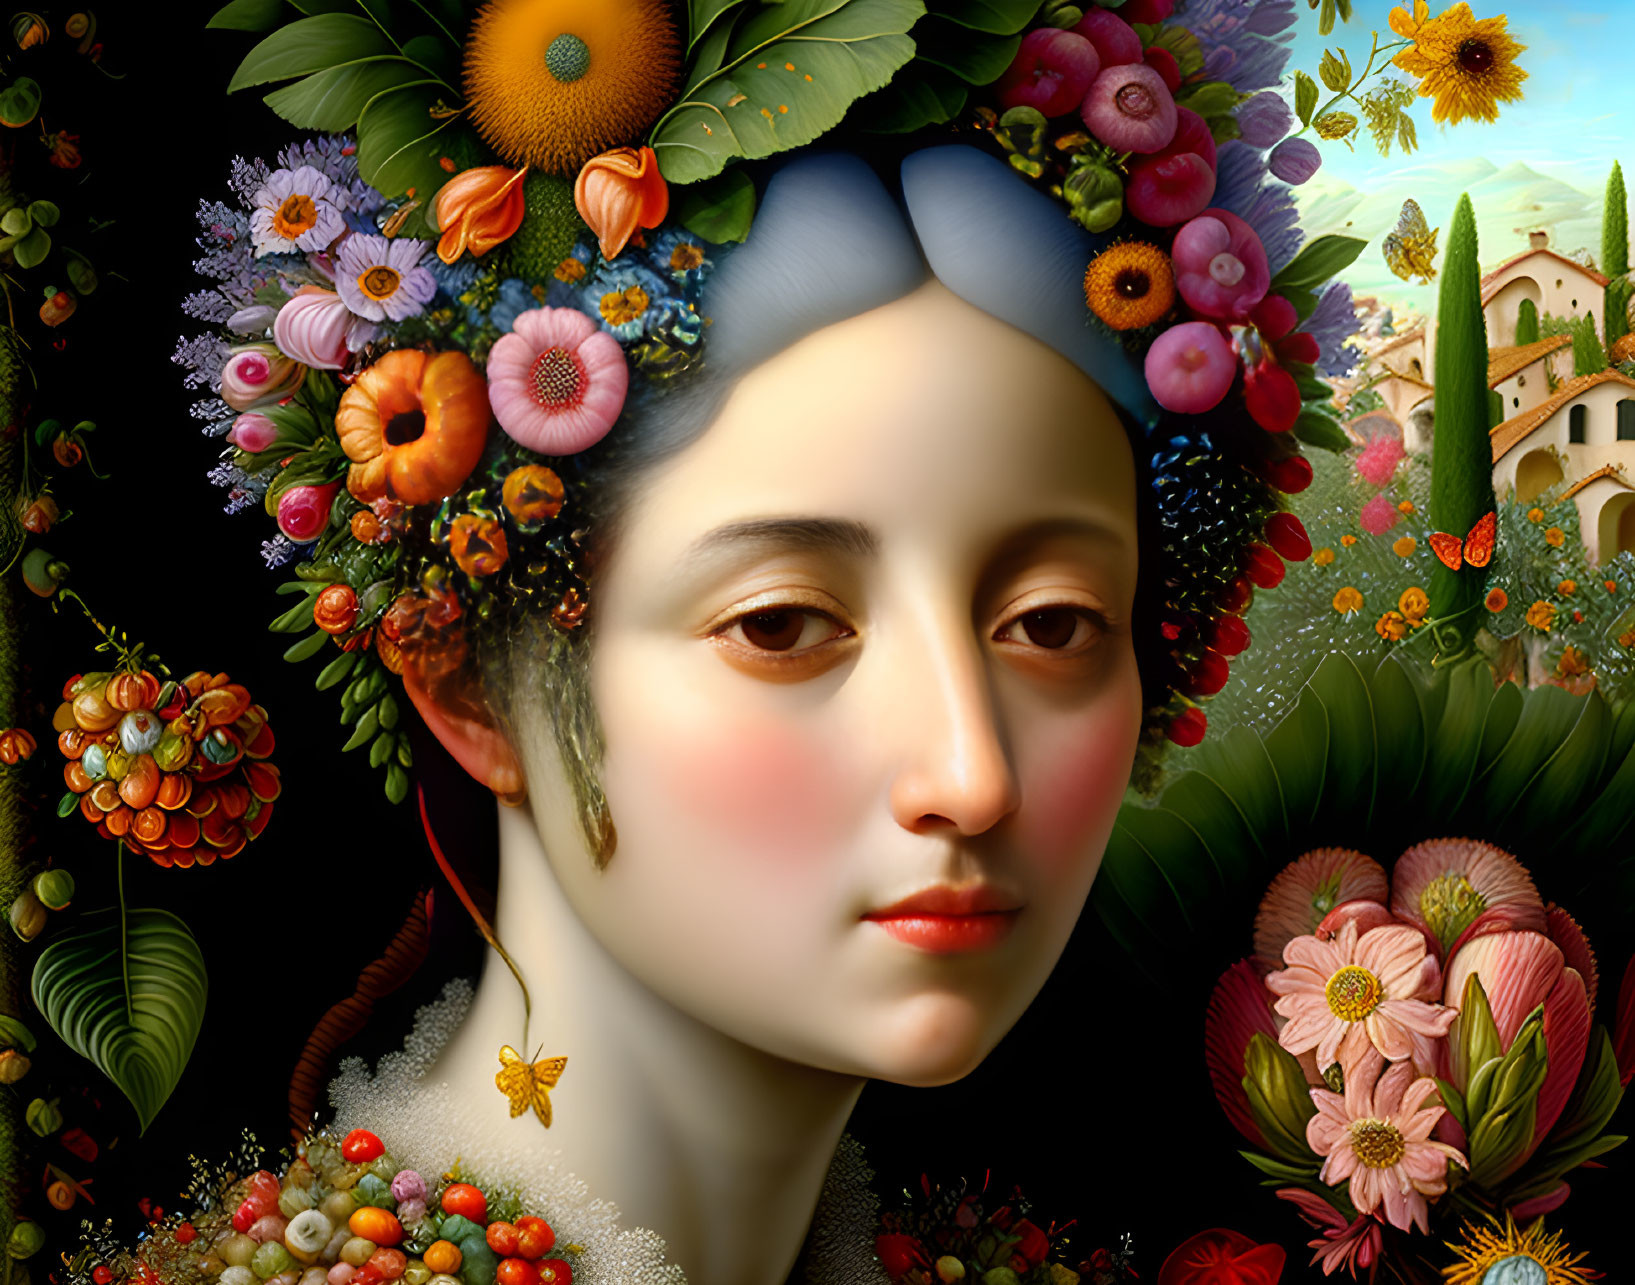 Woman portrait with fruit, flower headdress in garden setting